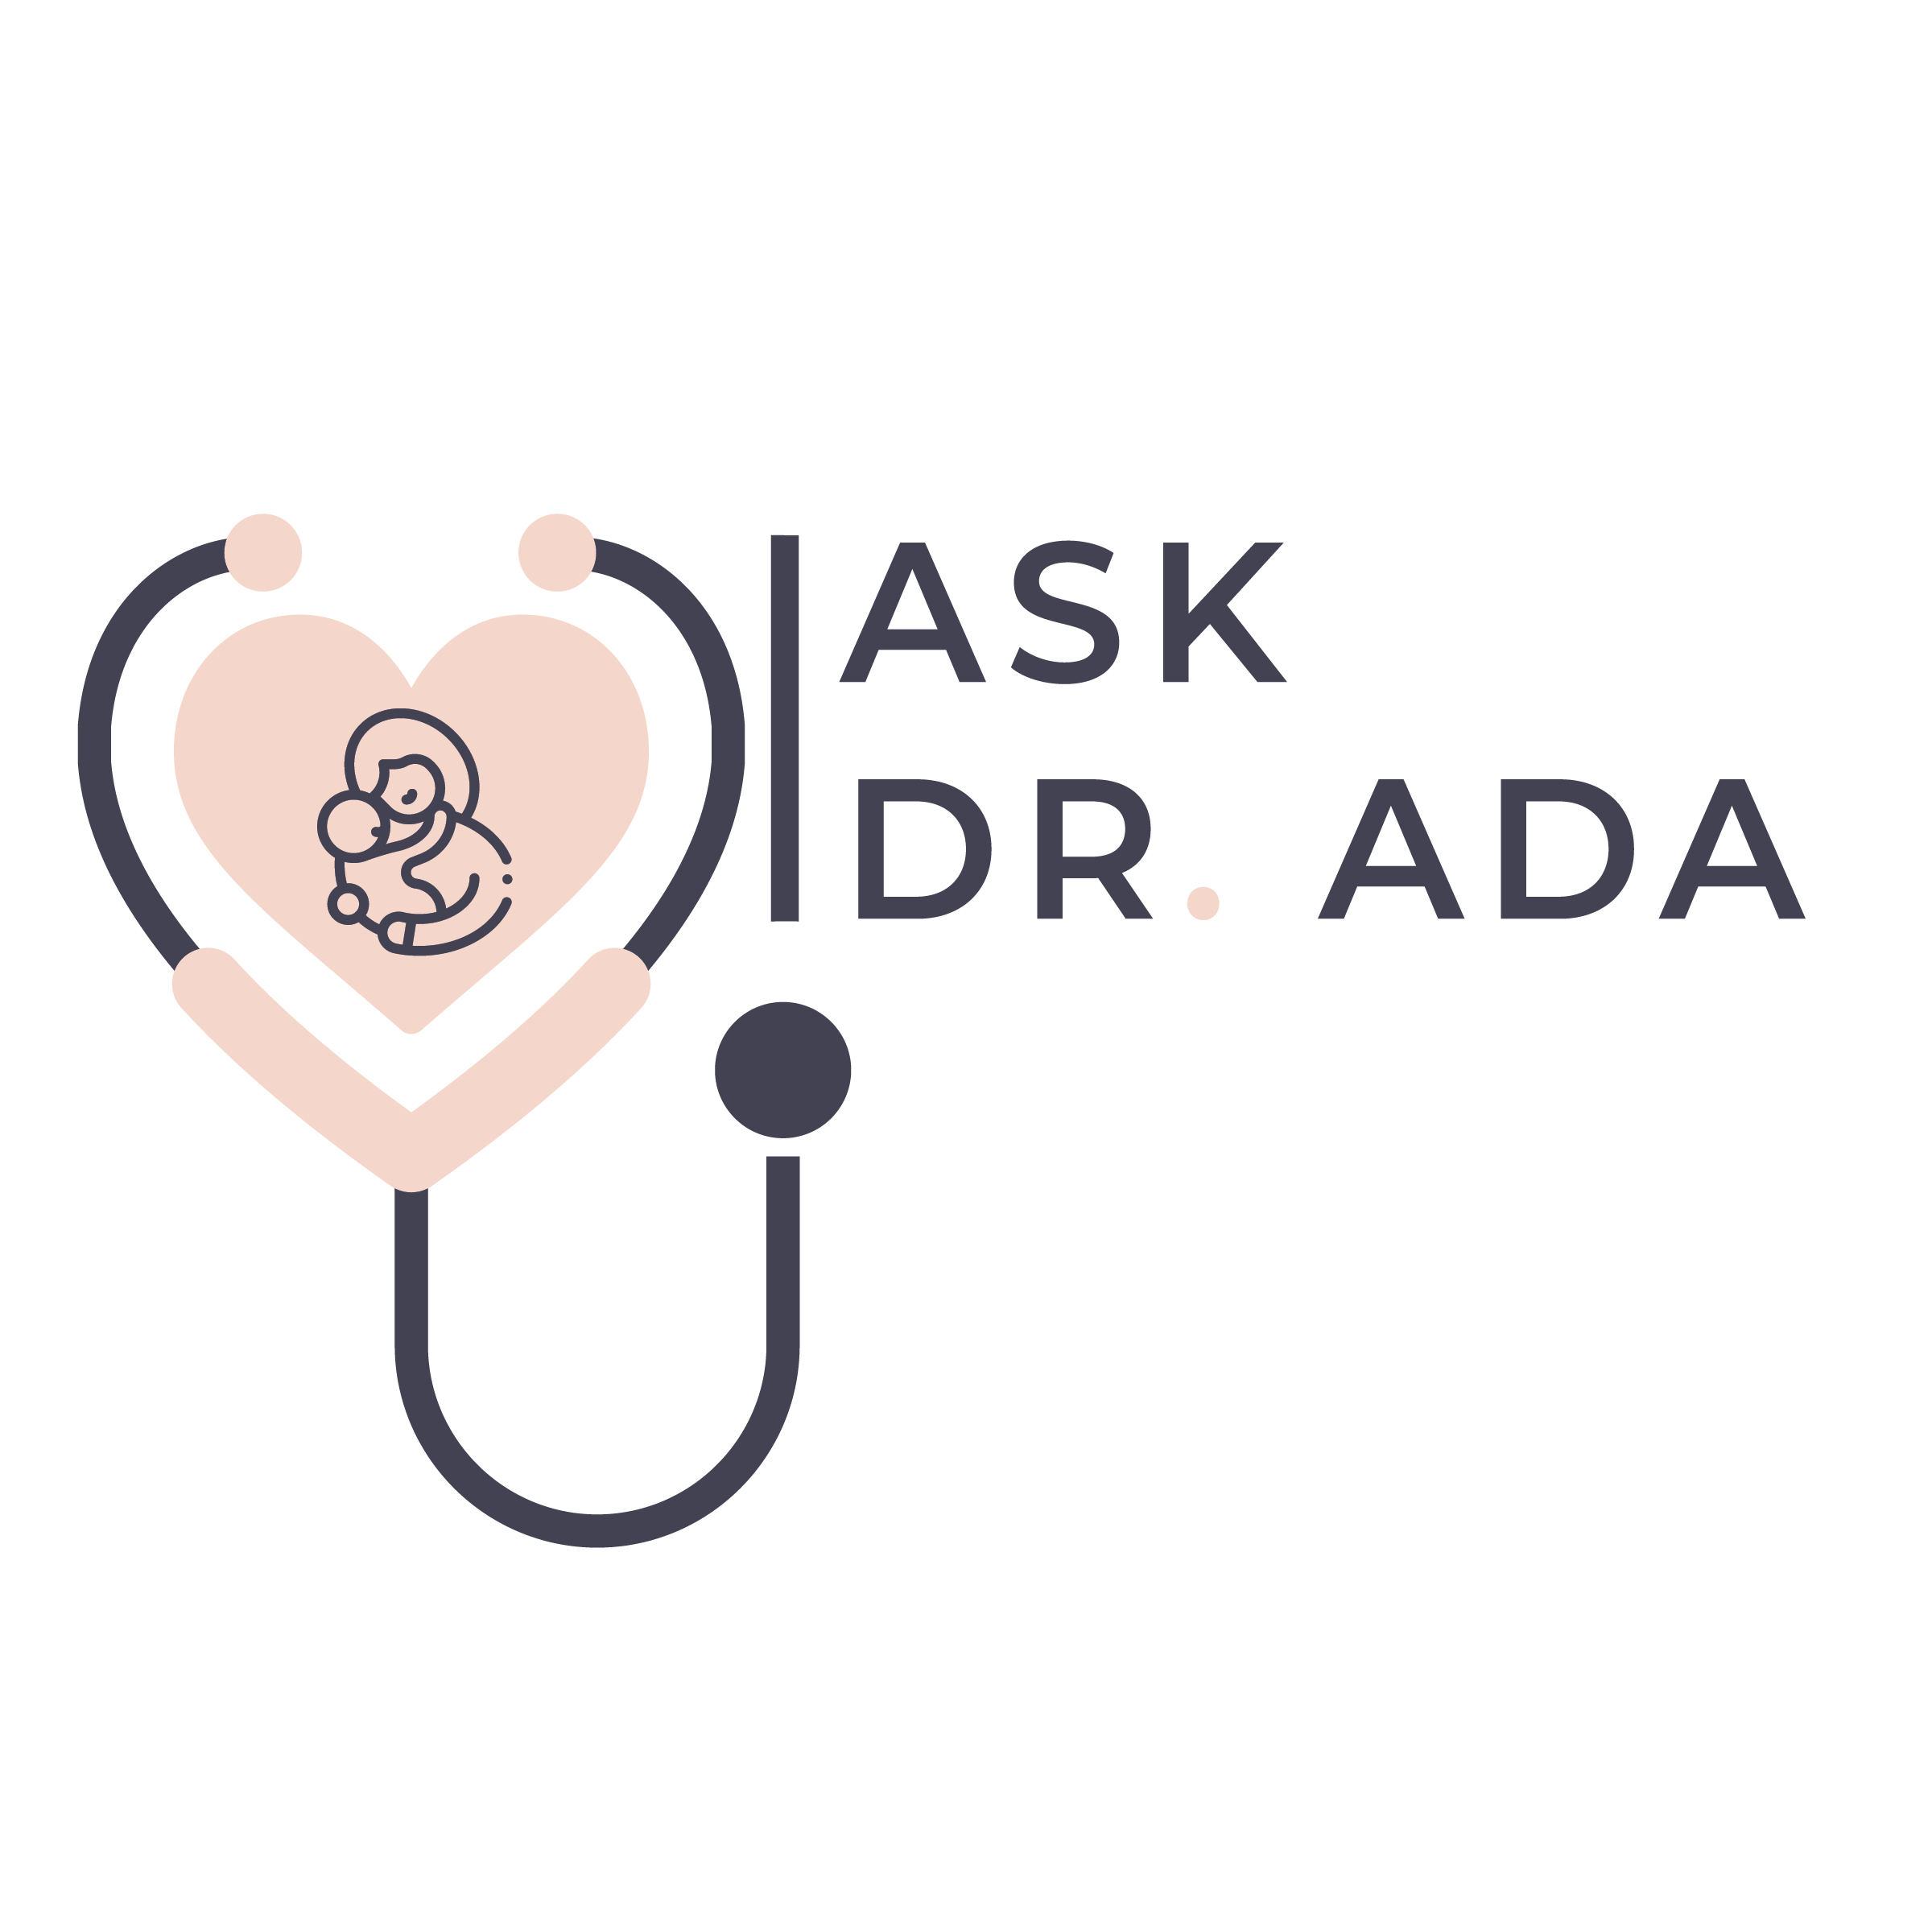 Ask Dr Ada